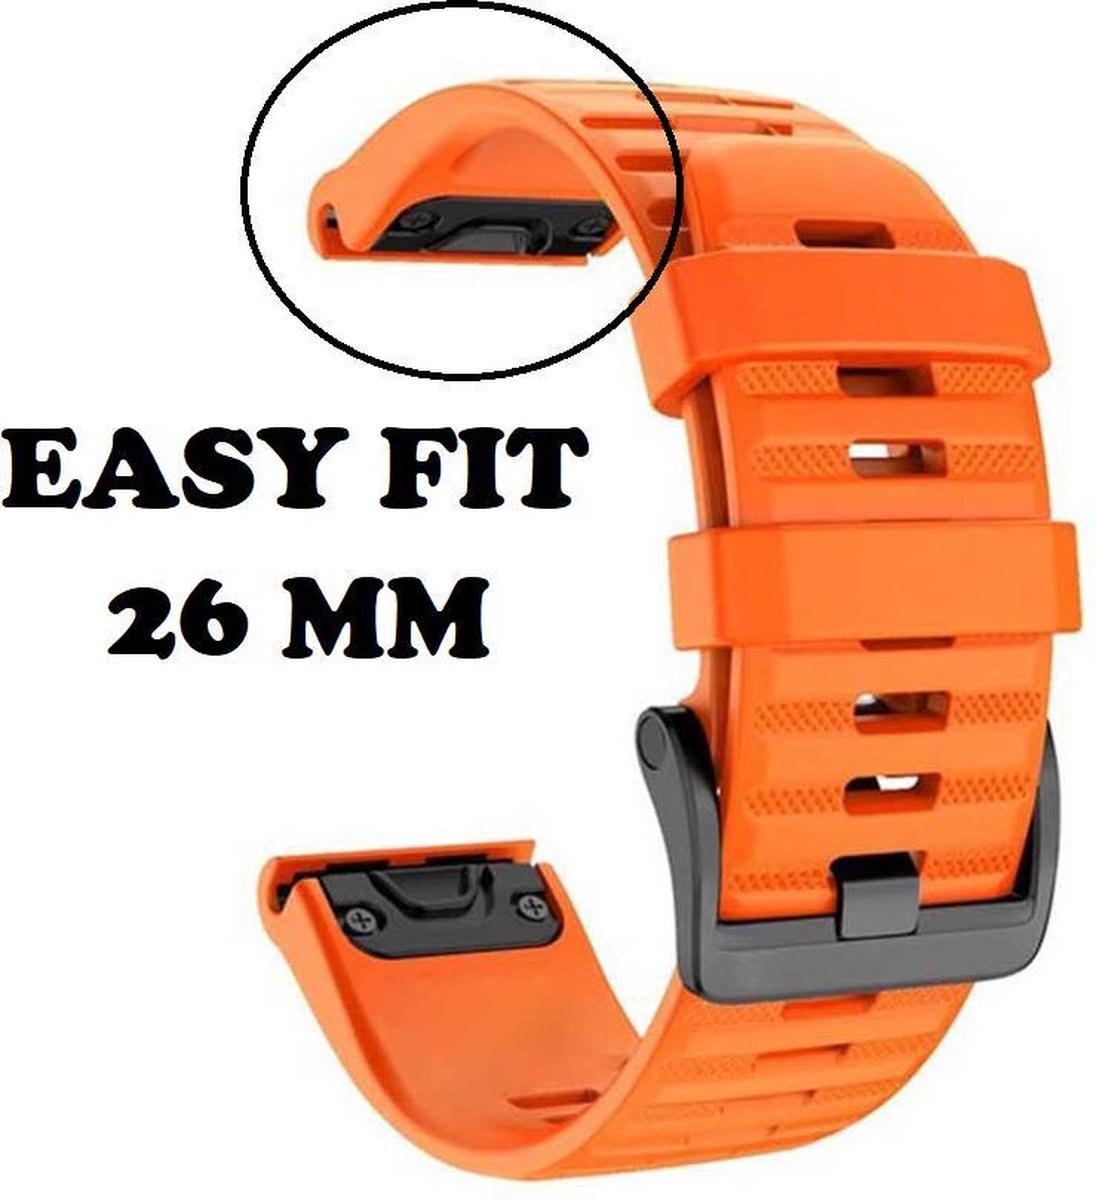 Firsttee - Siliconen Horlogeband - EASY FIT - 26 MM - Voor GARMIN - ORANJE - Horlogebandjes - Quick Release - Easy Click - Garmin – Fenix 5X – Fenix 6X - Fenix 3 - Horloge bandje - Golfkleding - Golf accessoires – Cadeau - Firsttee